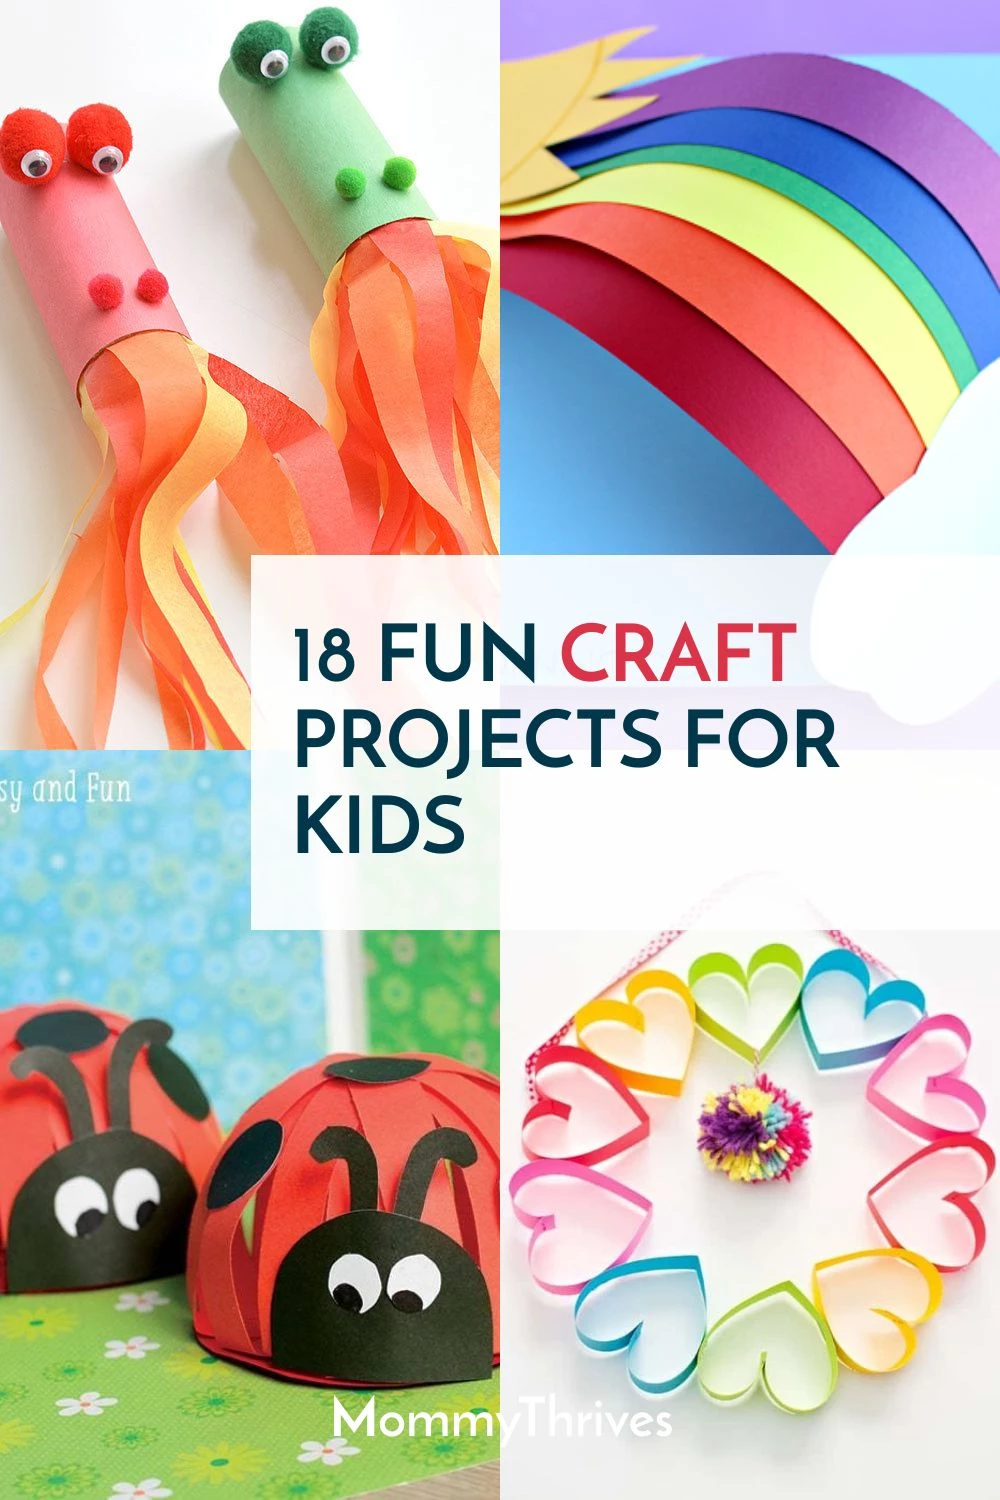 Art & craft ideas for - Art & craft ideas for adults